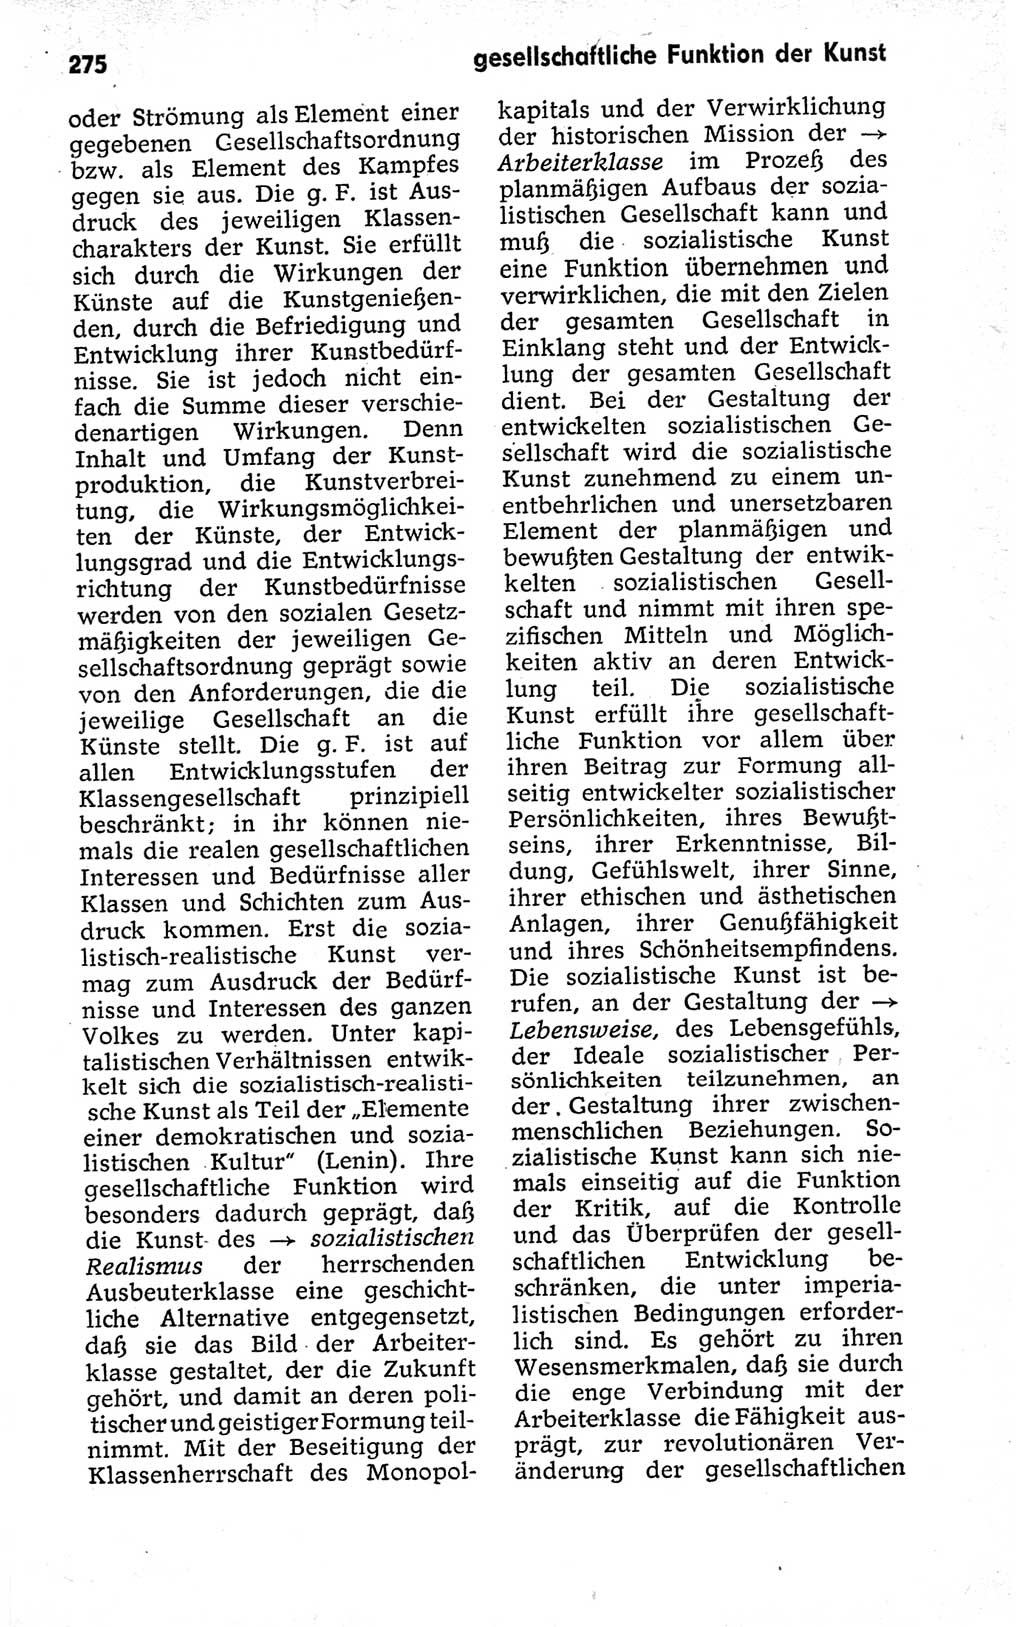 Kleines politisches Wörterbuch [Deutsche Demokratische Republik (DDR)] 1973, Seite 275 (Kl. pol. Wb. DDR 1973, S. 275)